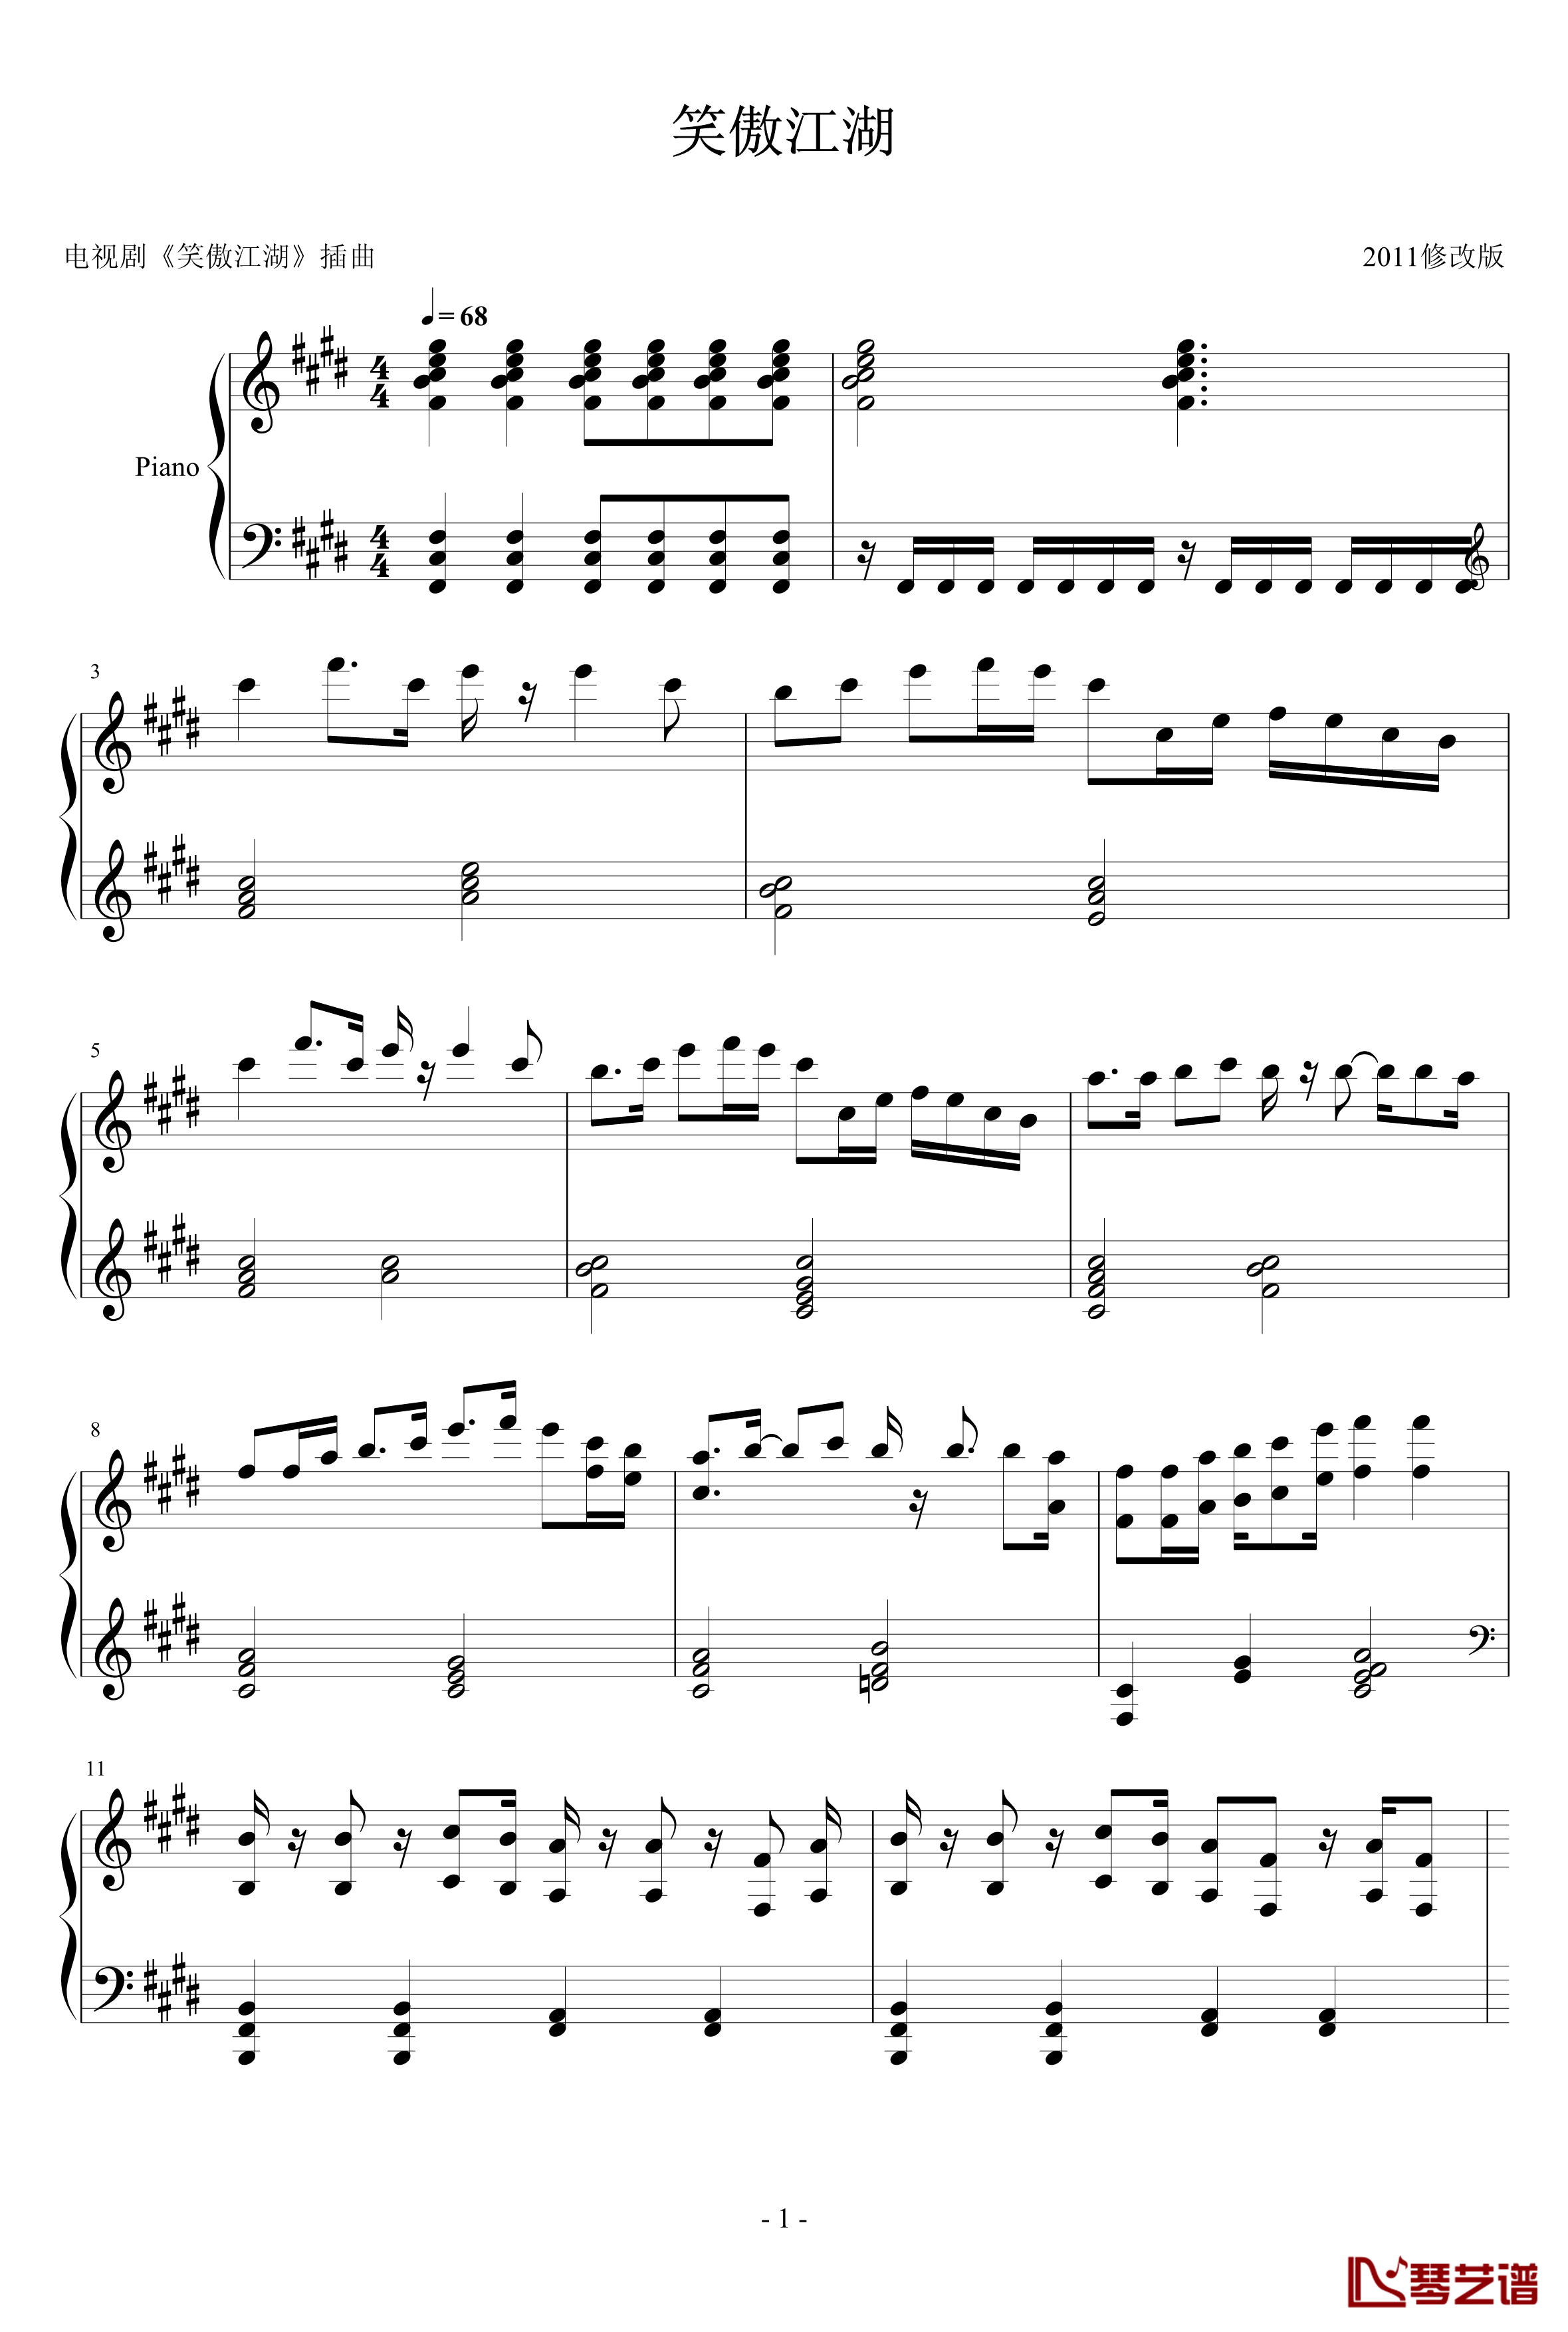 笑傲江湖钢琴谱-2012改版，完全钢琴可演奏，7级1